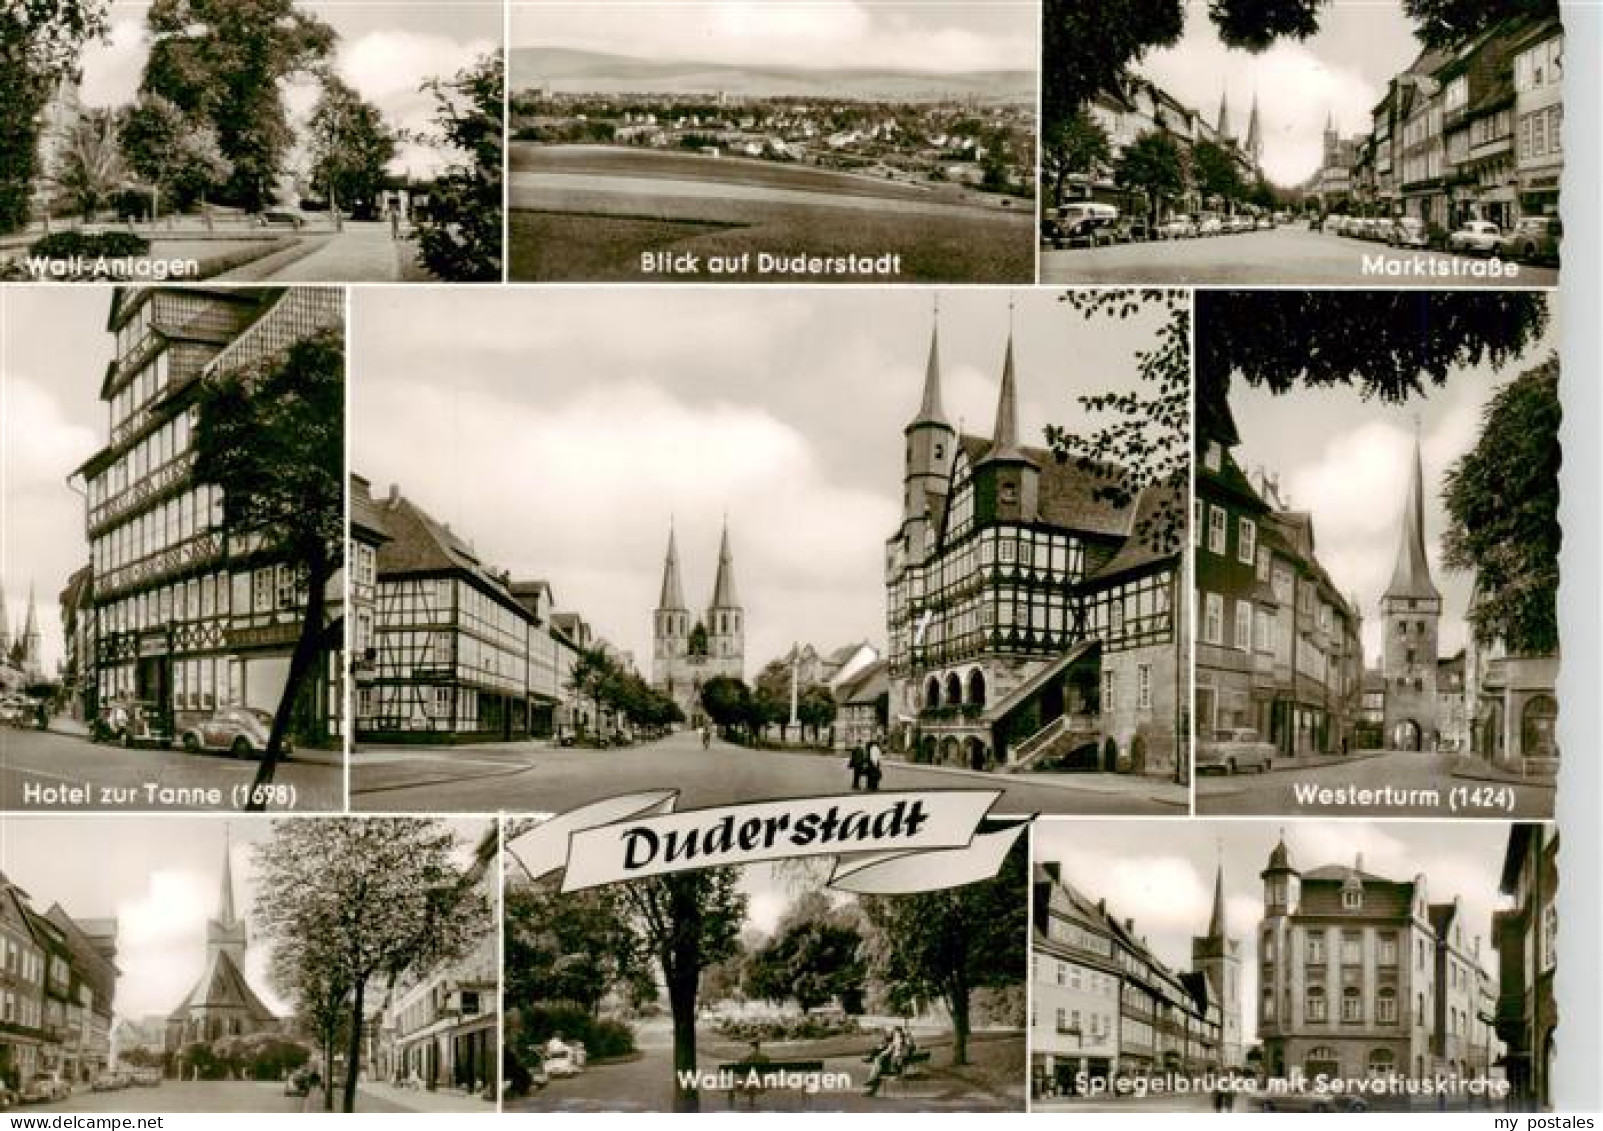 73905044 Duderstadt Wall Anlagen Panorama Marktstrasse Hotel Zur Tanne Westertur - Duderstadt